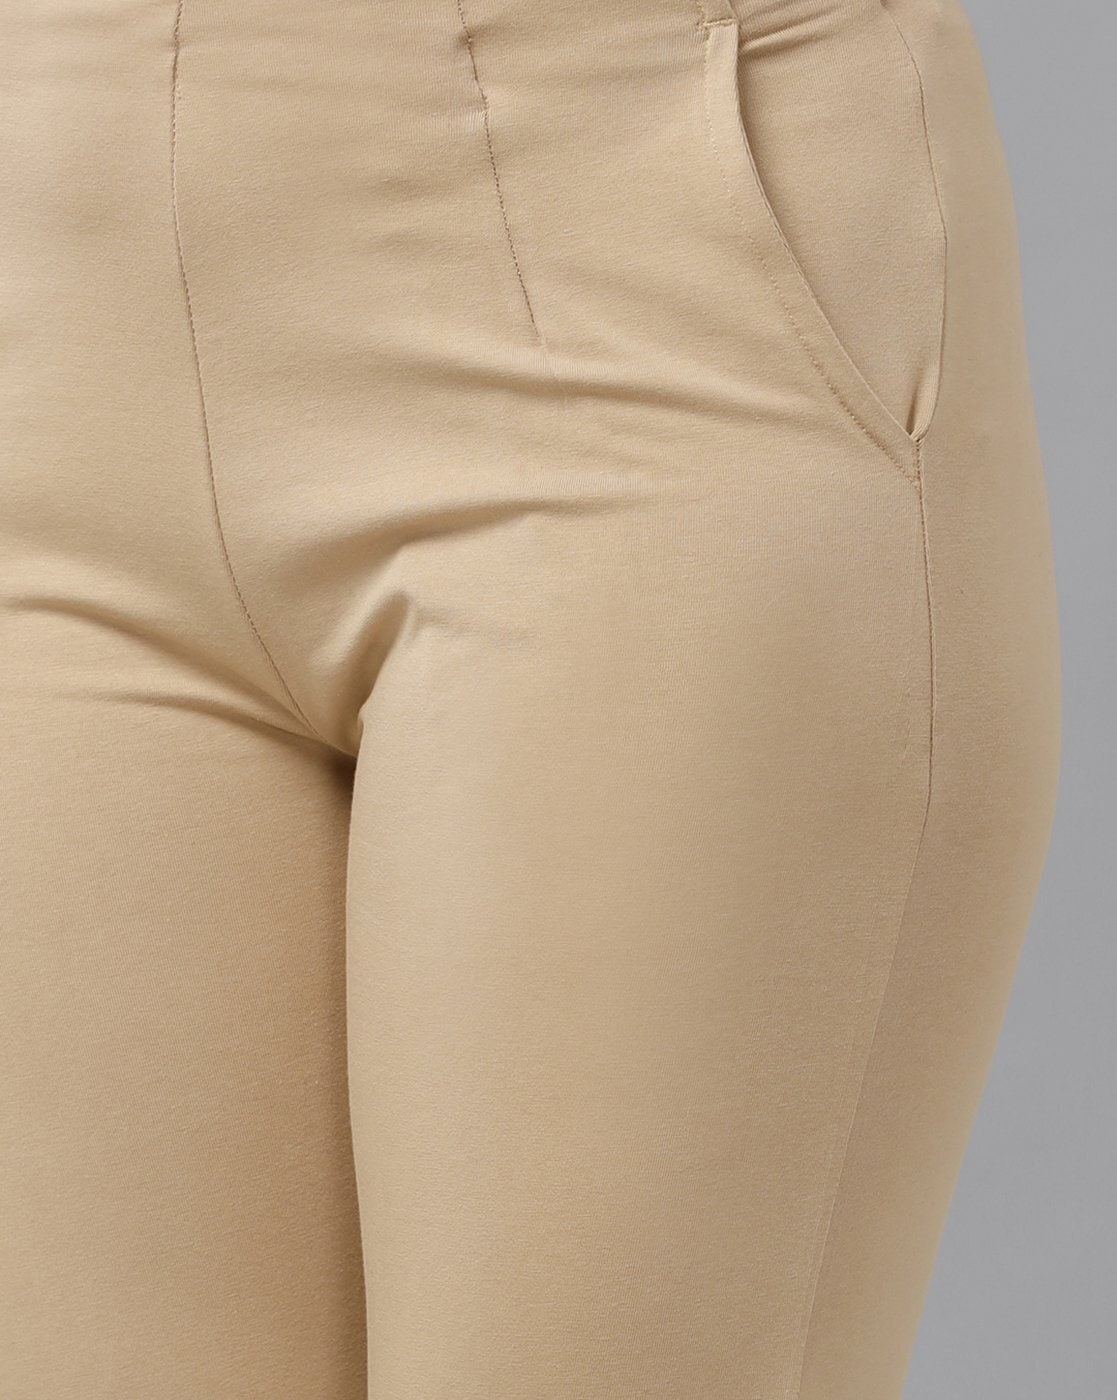 Amazon.com: Cream Pants For Women